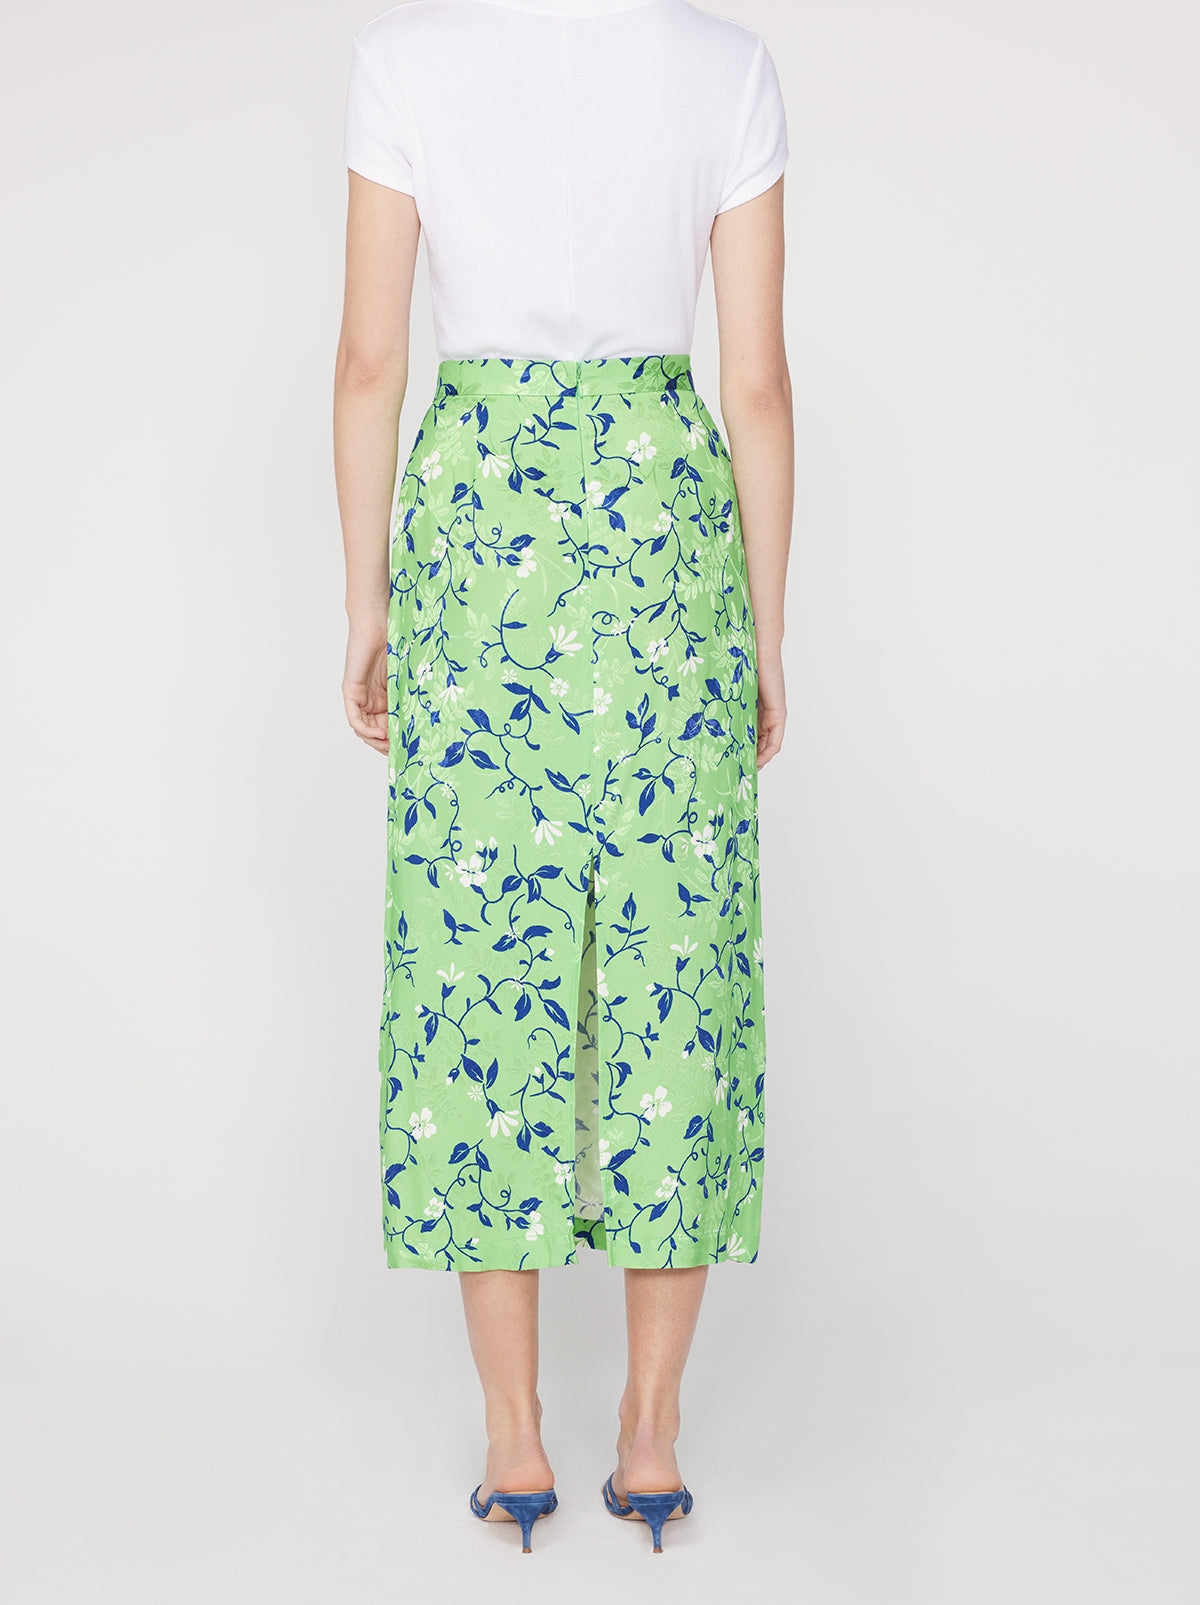 Laurel Green Vine Print Skirt By KITRI Studio